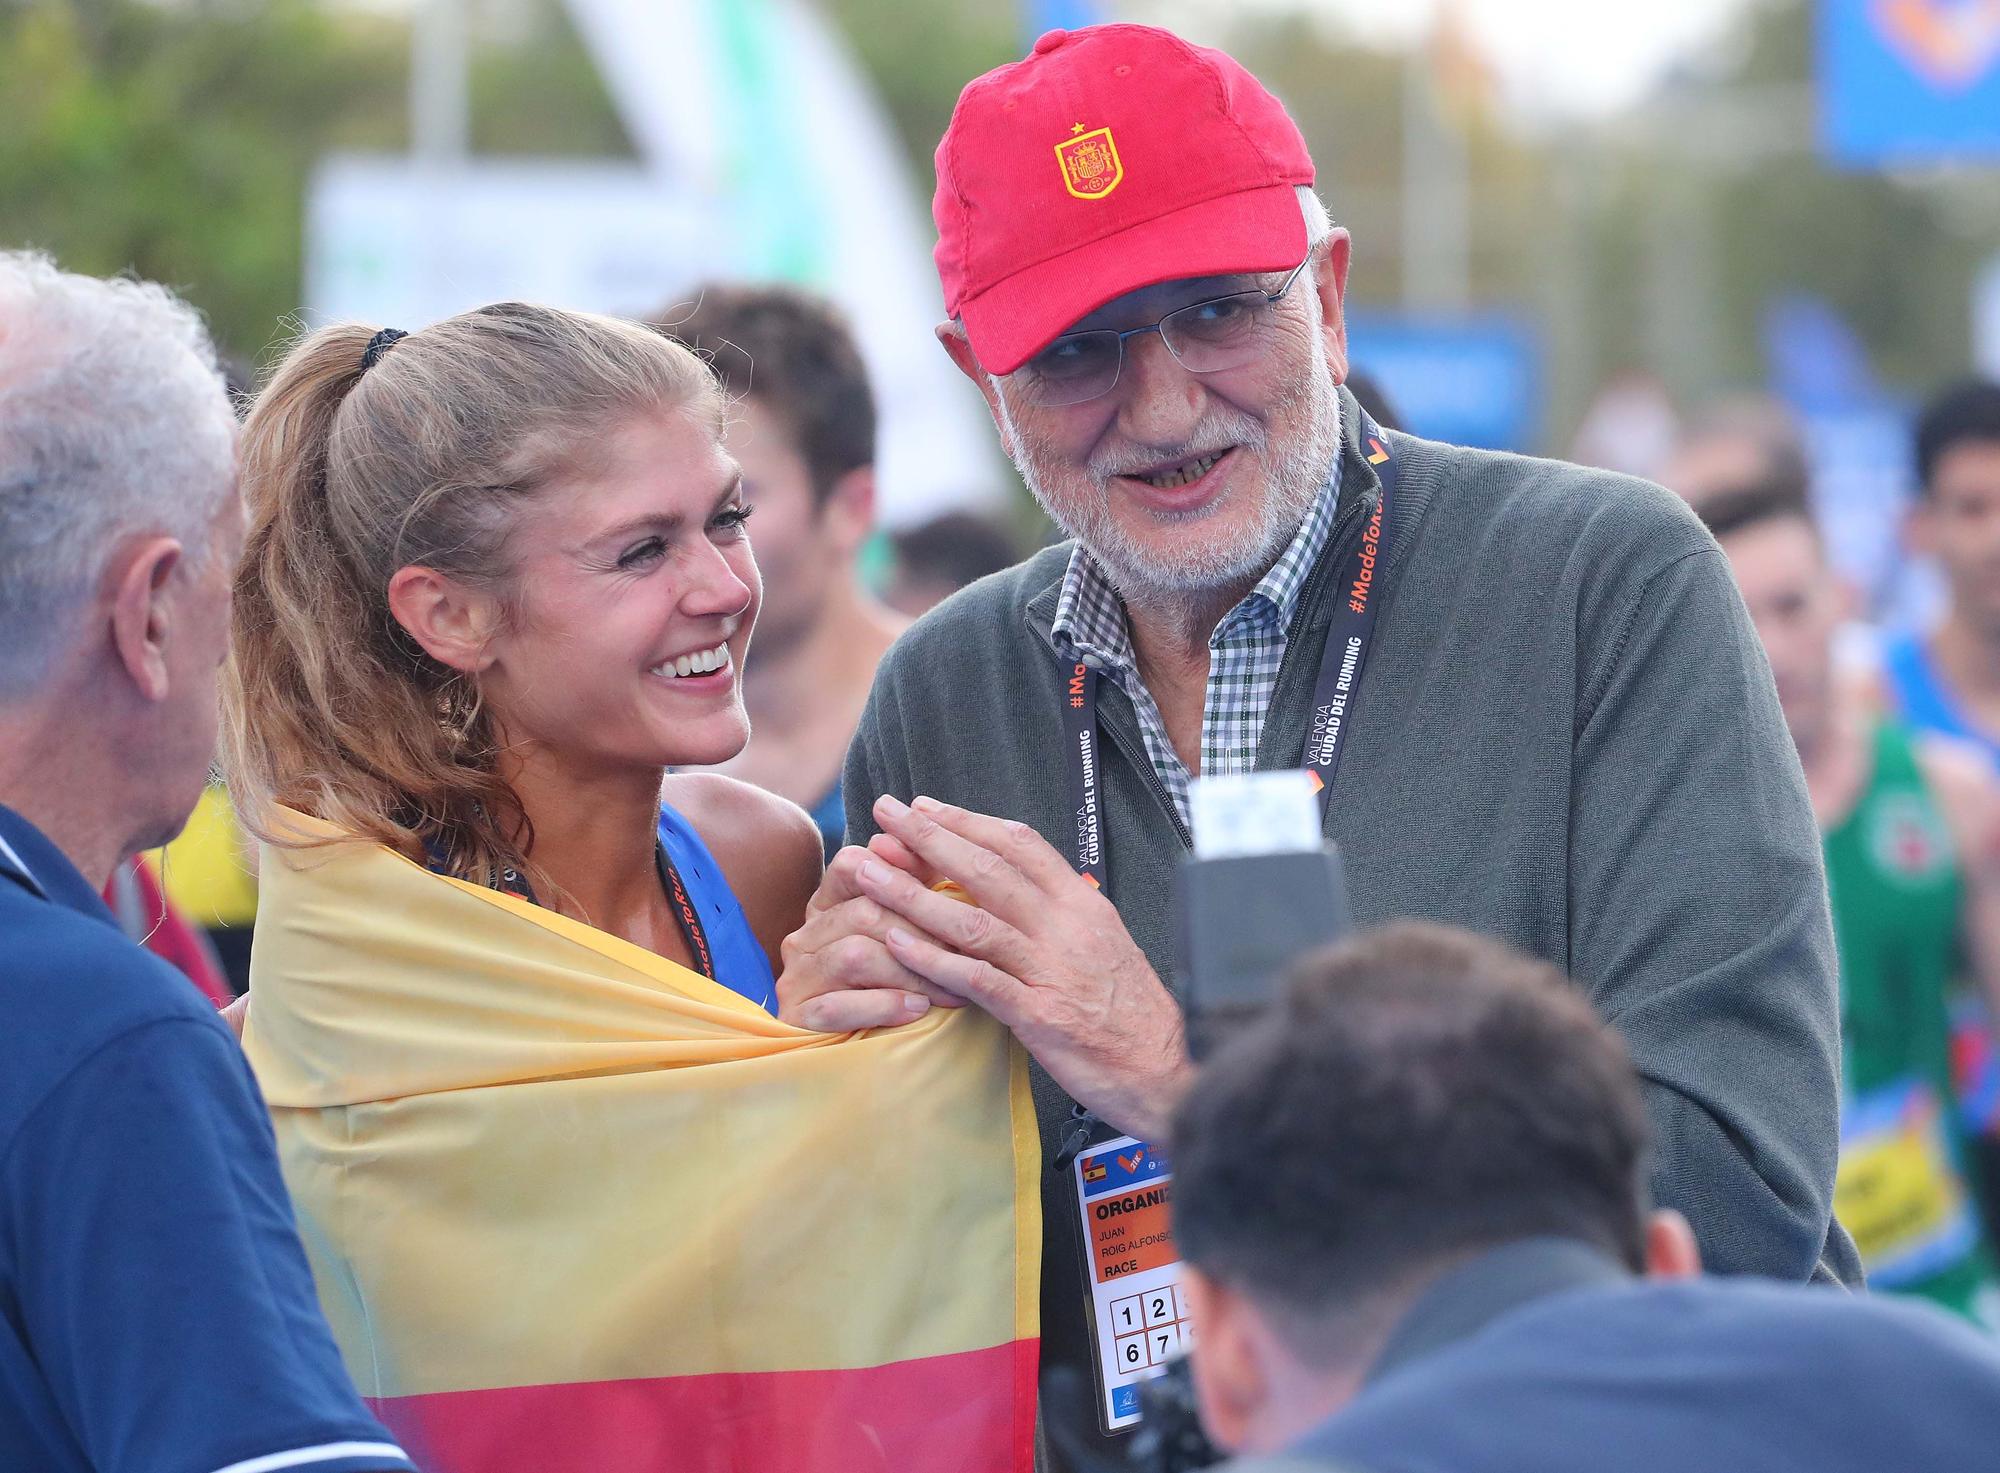 Media Maratón Valencia 2022: Salida y Meta | Busca tu foto